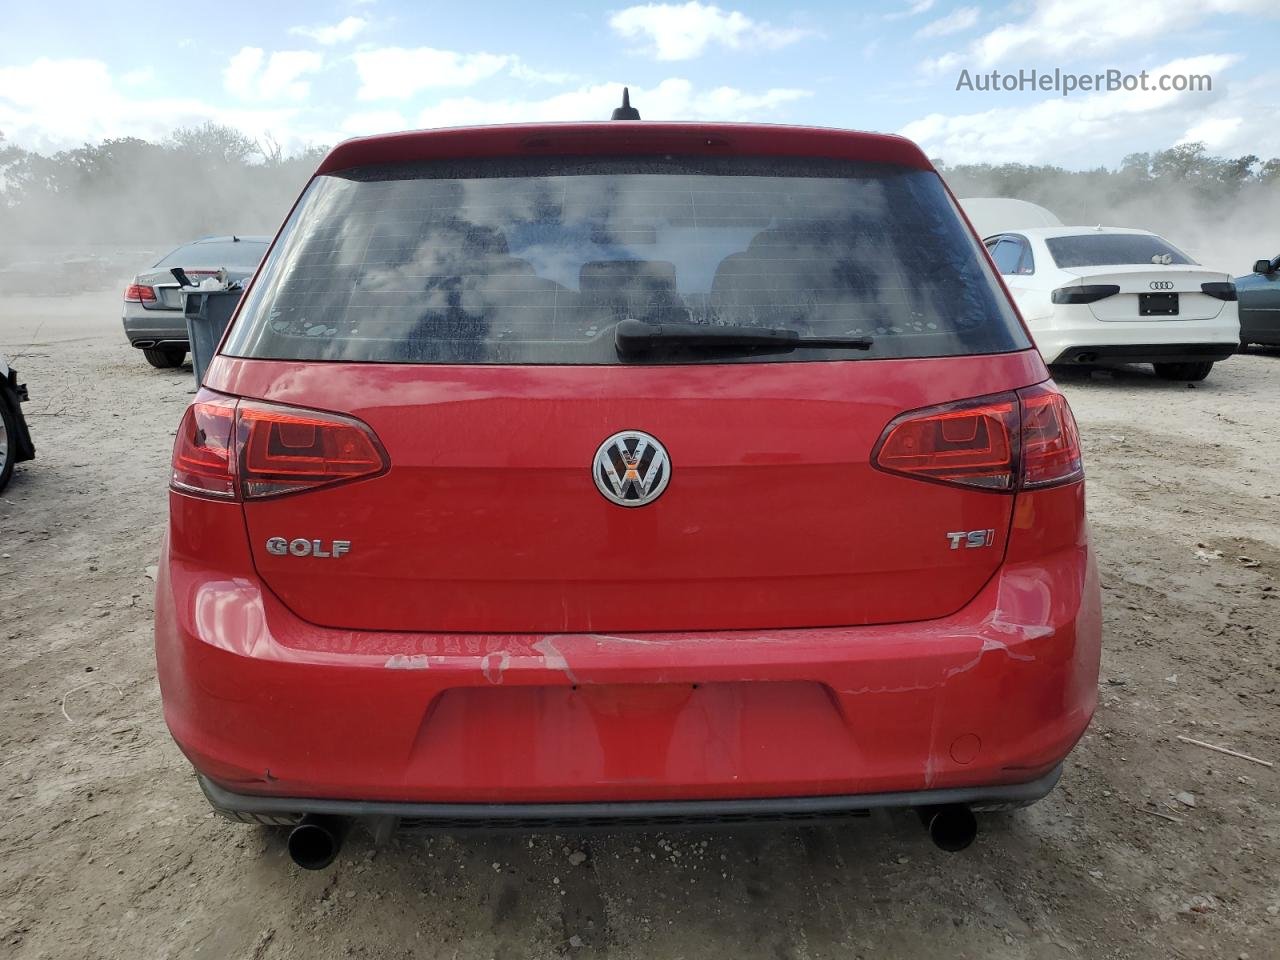 2015 Volkswagen Golf  Красный vin: 3VW217AUXFM035020